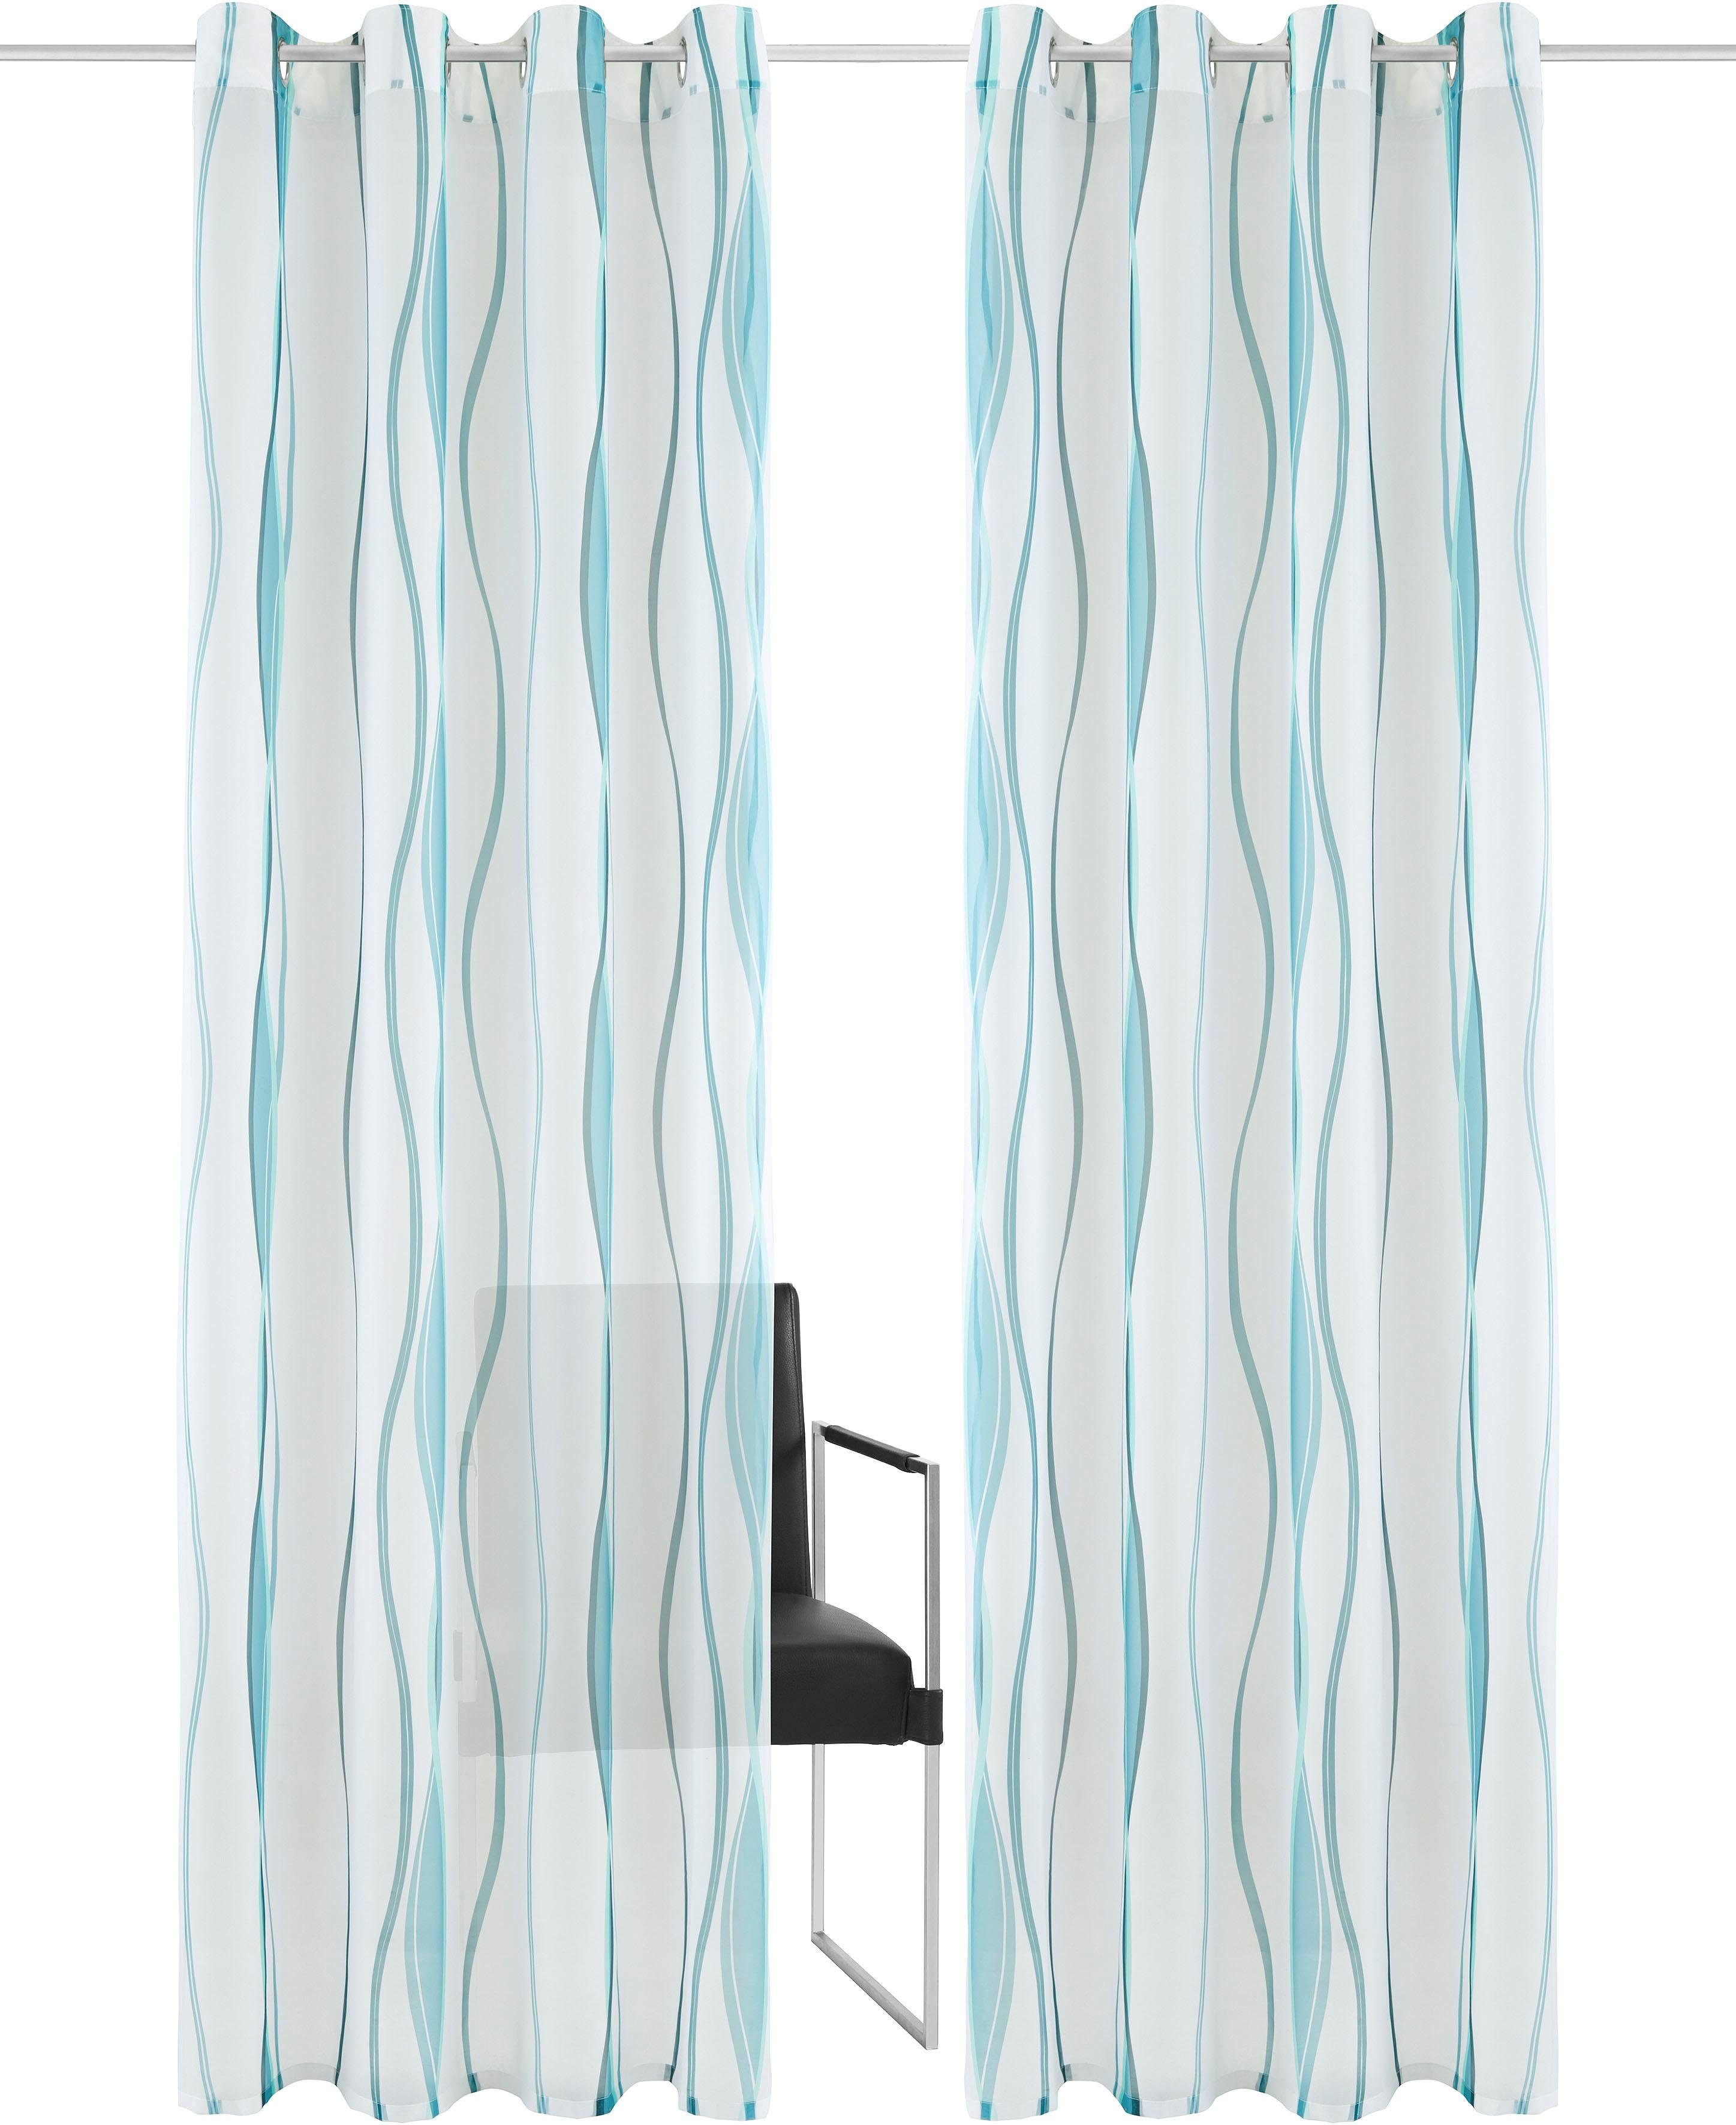 my home Gordijn Dimona Transparant, voile, polyester, golven (2 stuks)